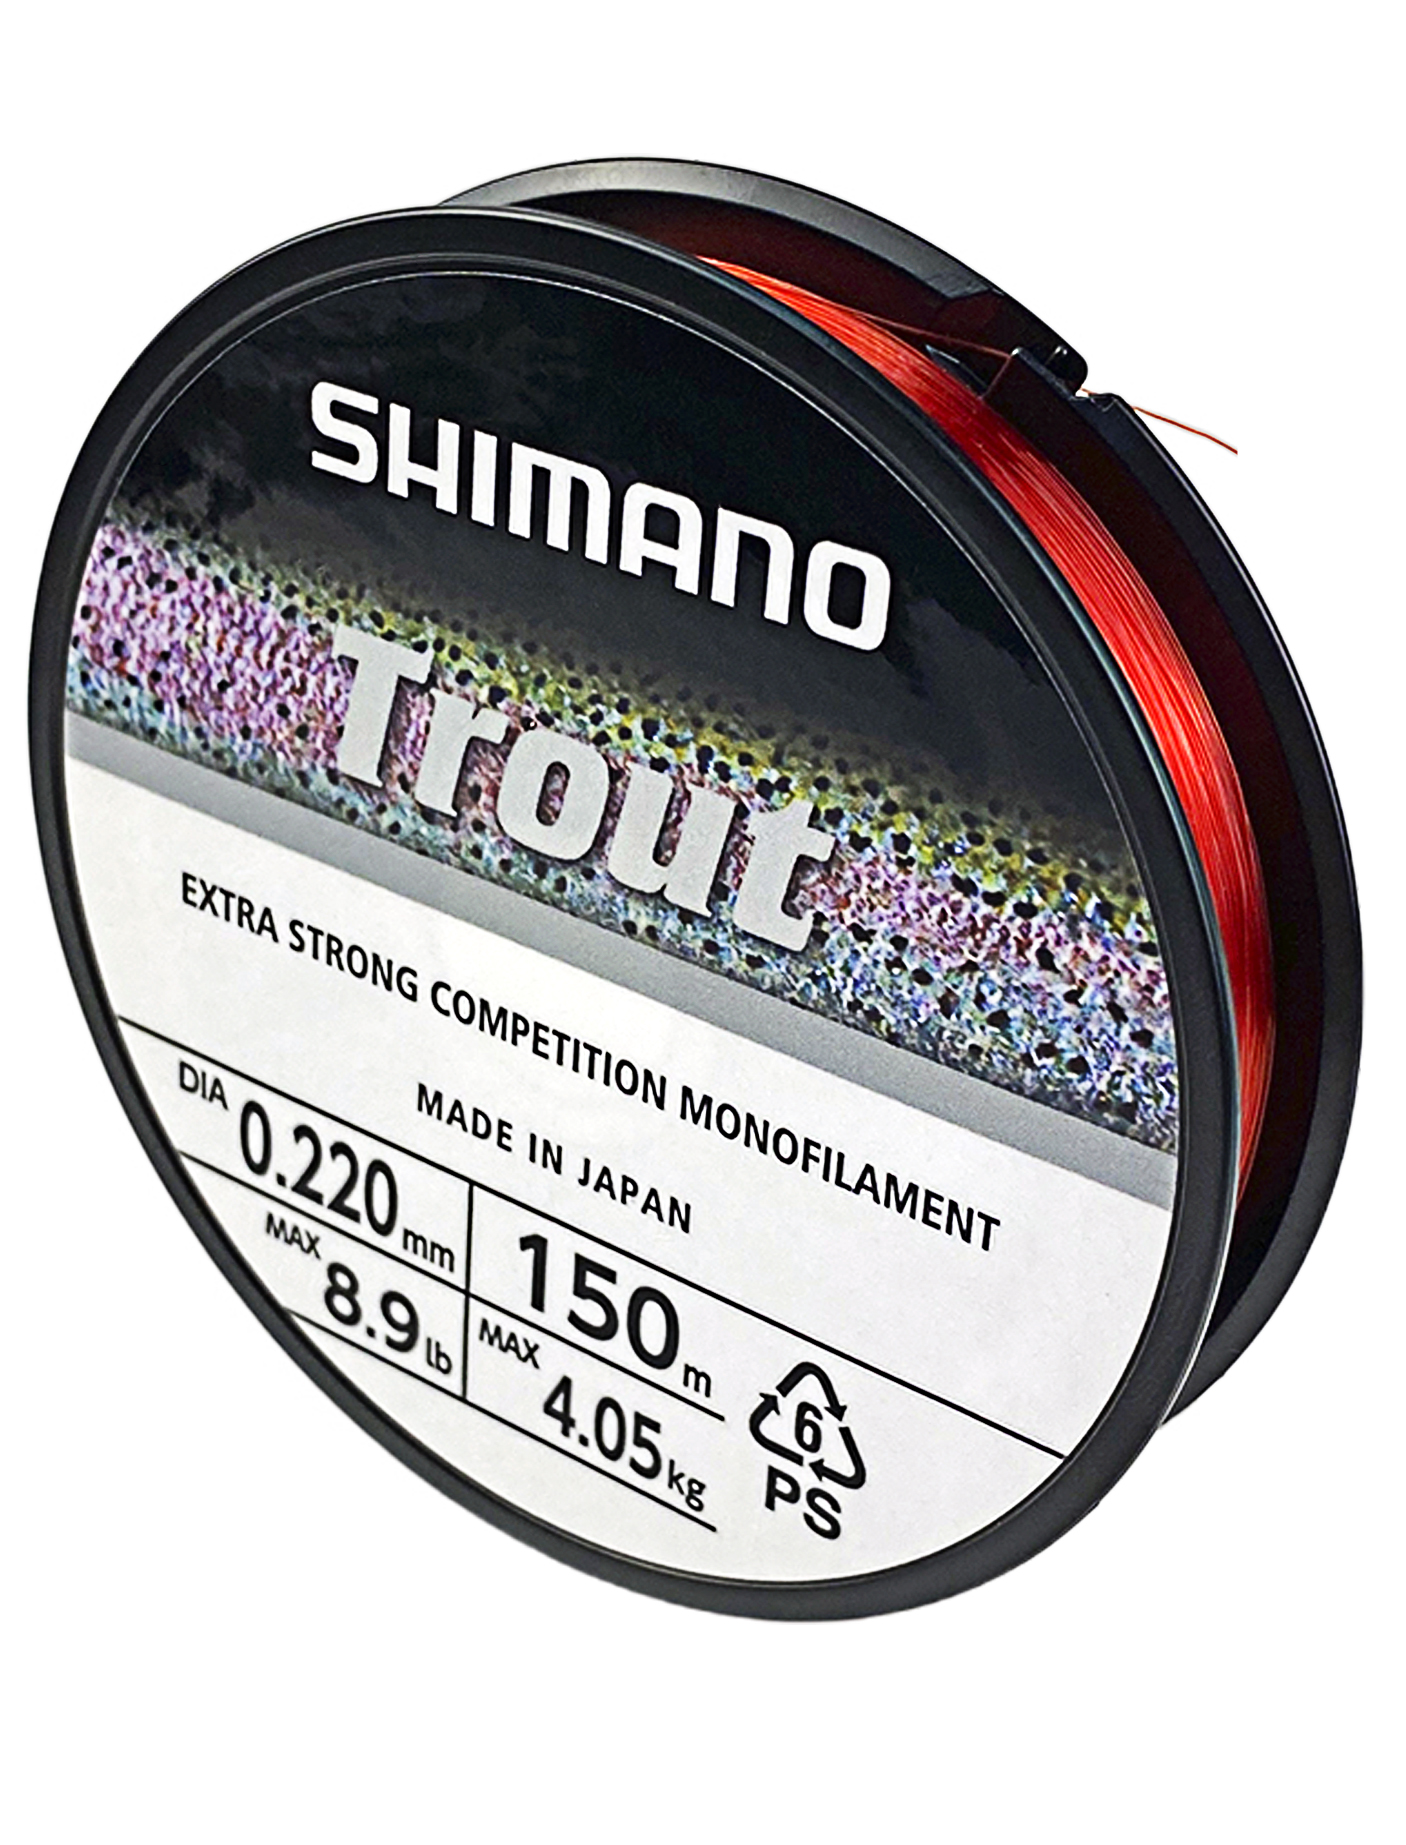 Леска Shimano Trout Competition 150м 0.22мм - фото 1